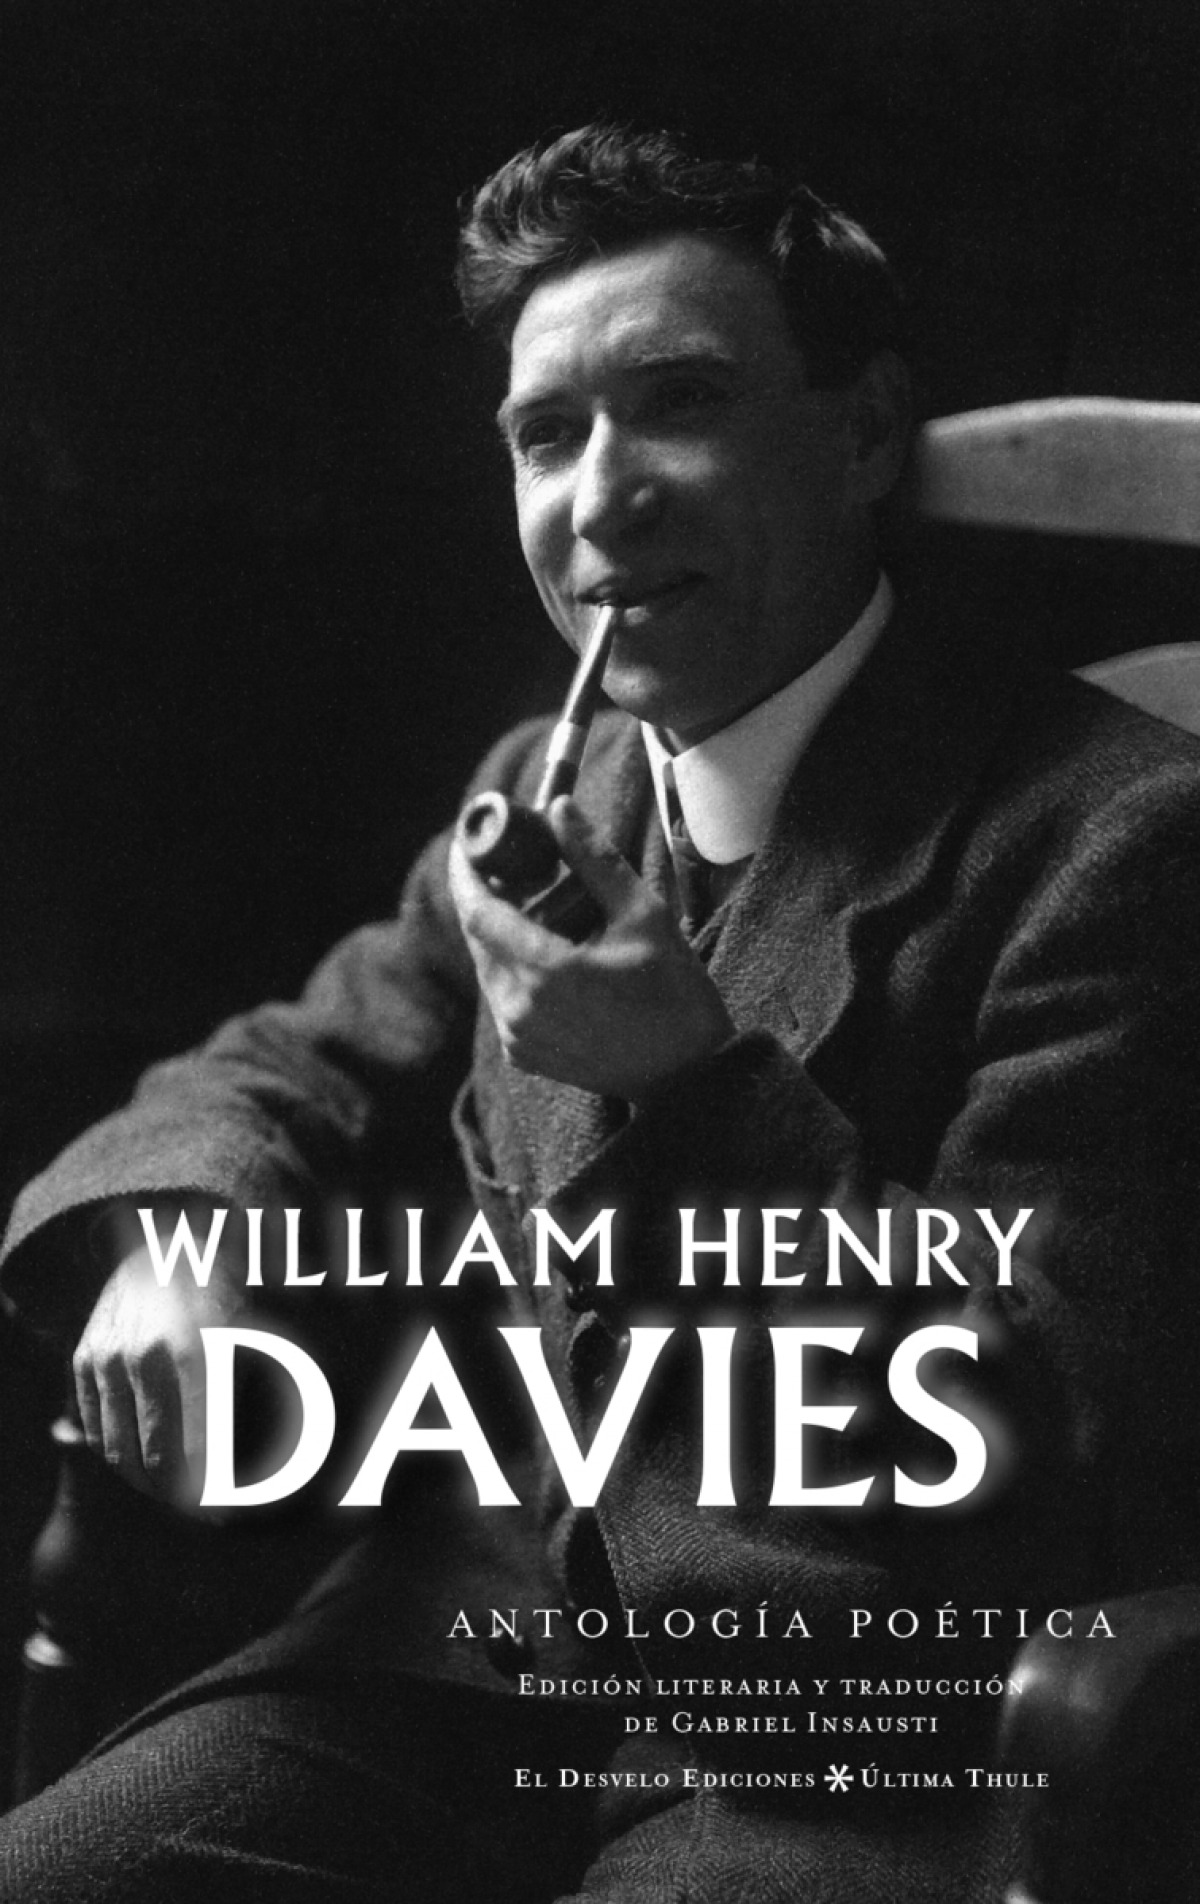 William Henry Davies Antología poética